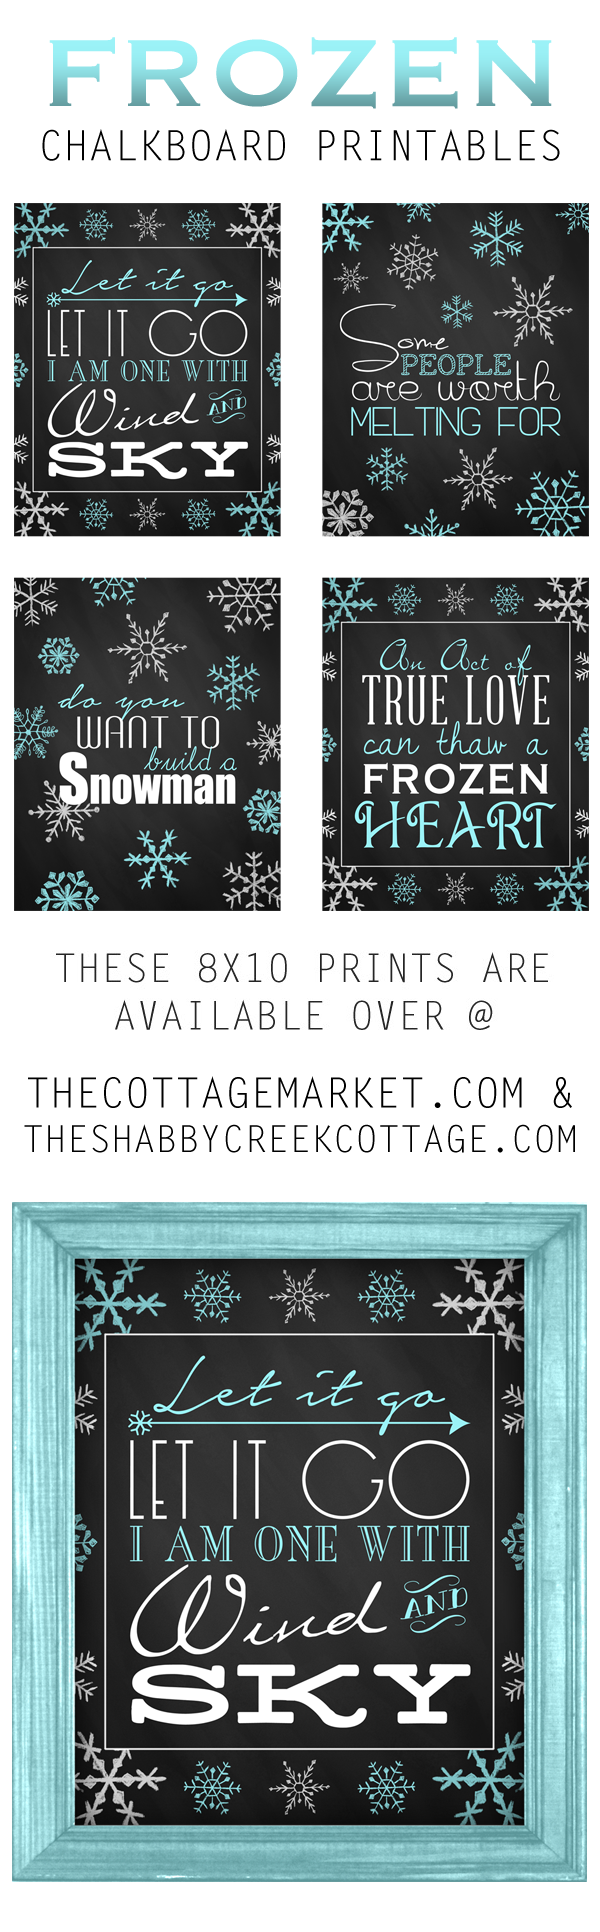 Frozen Chalkboard Printables